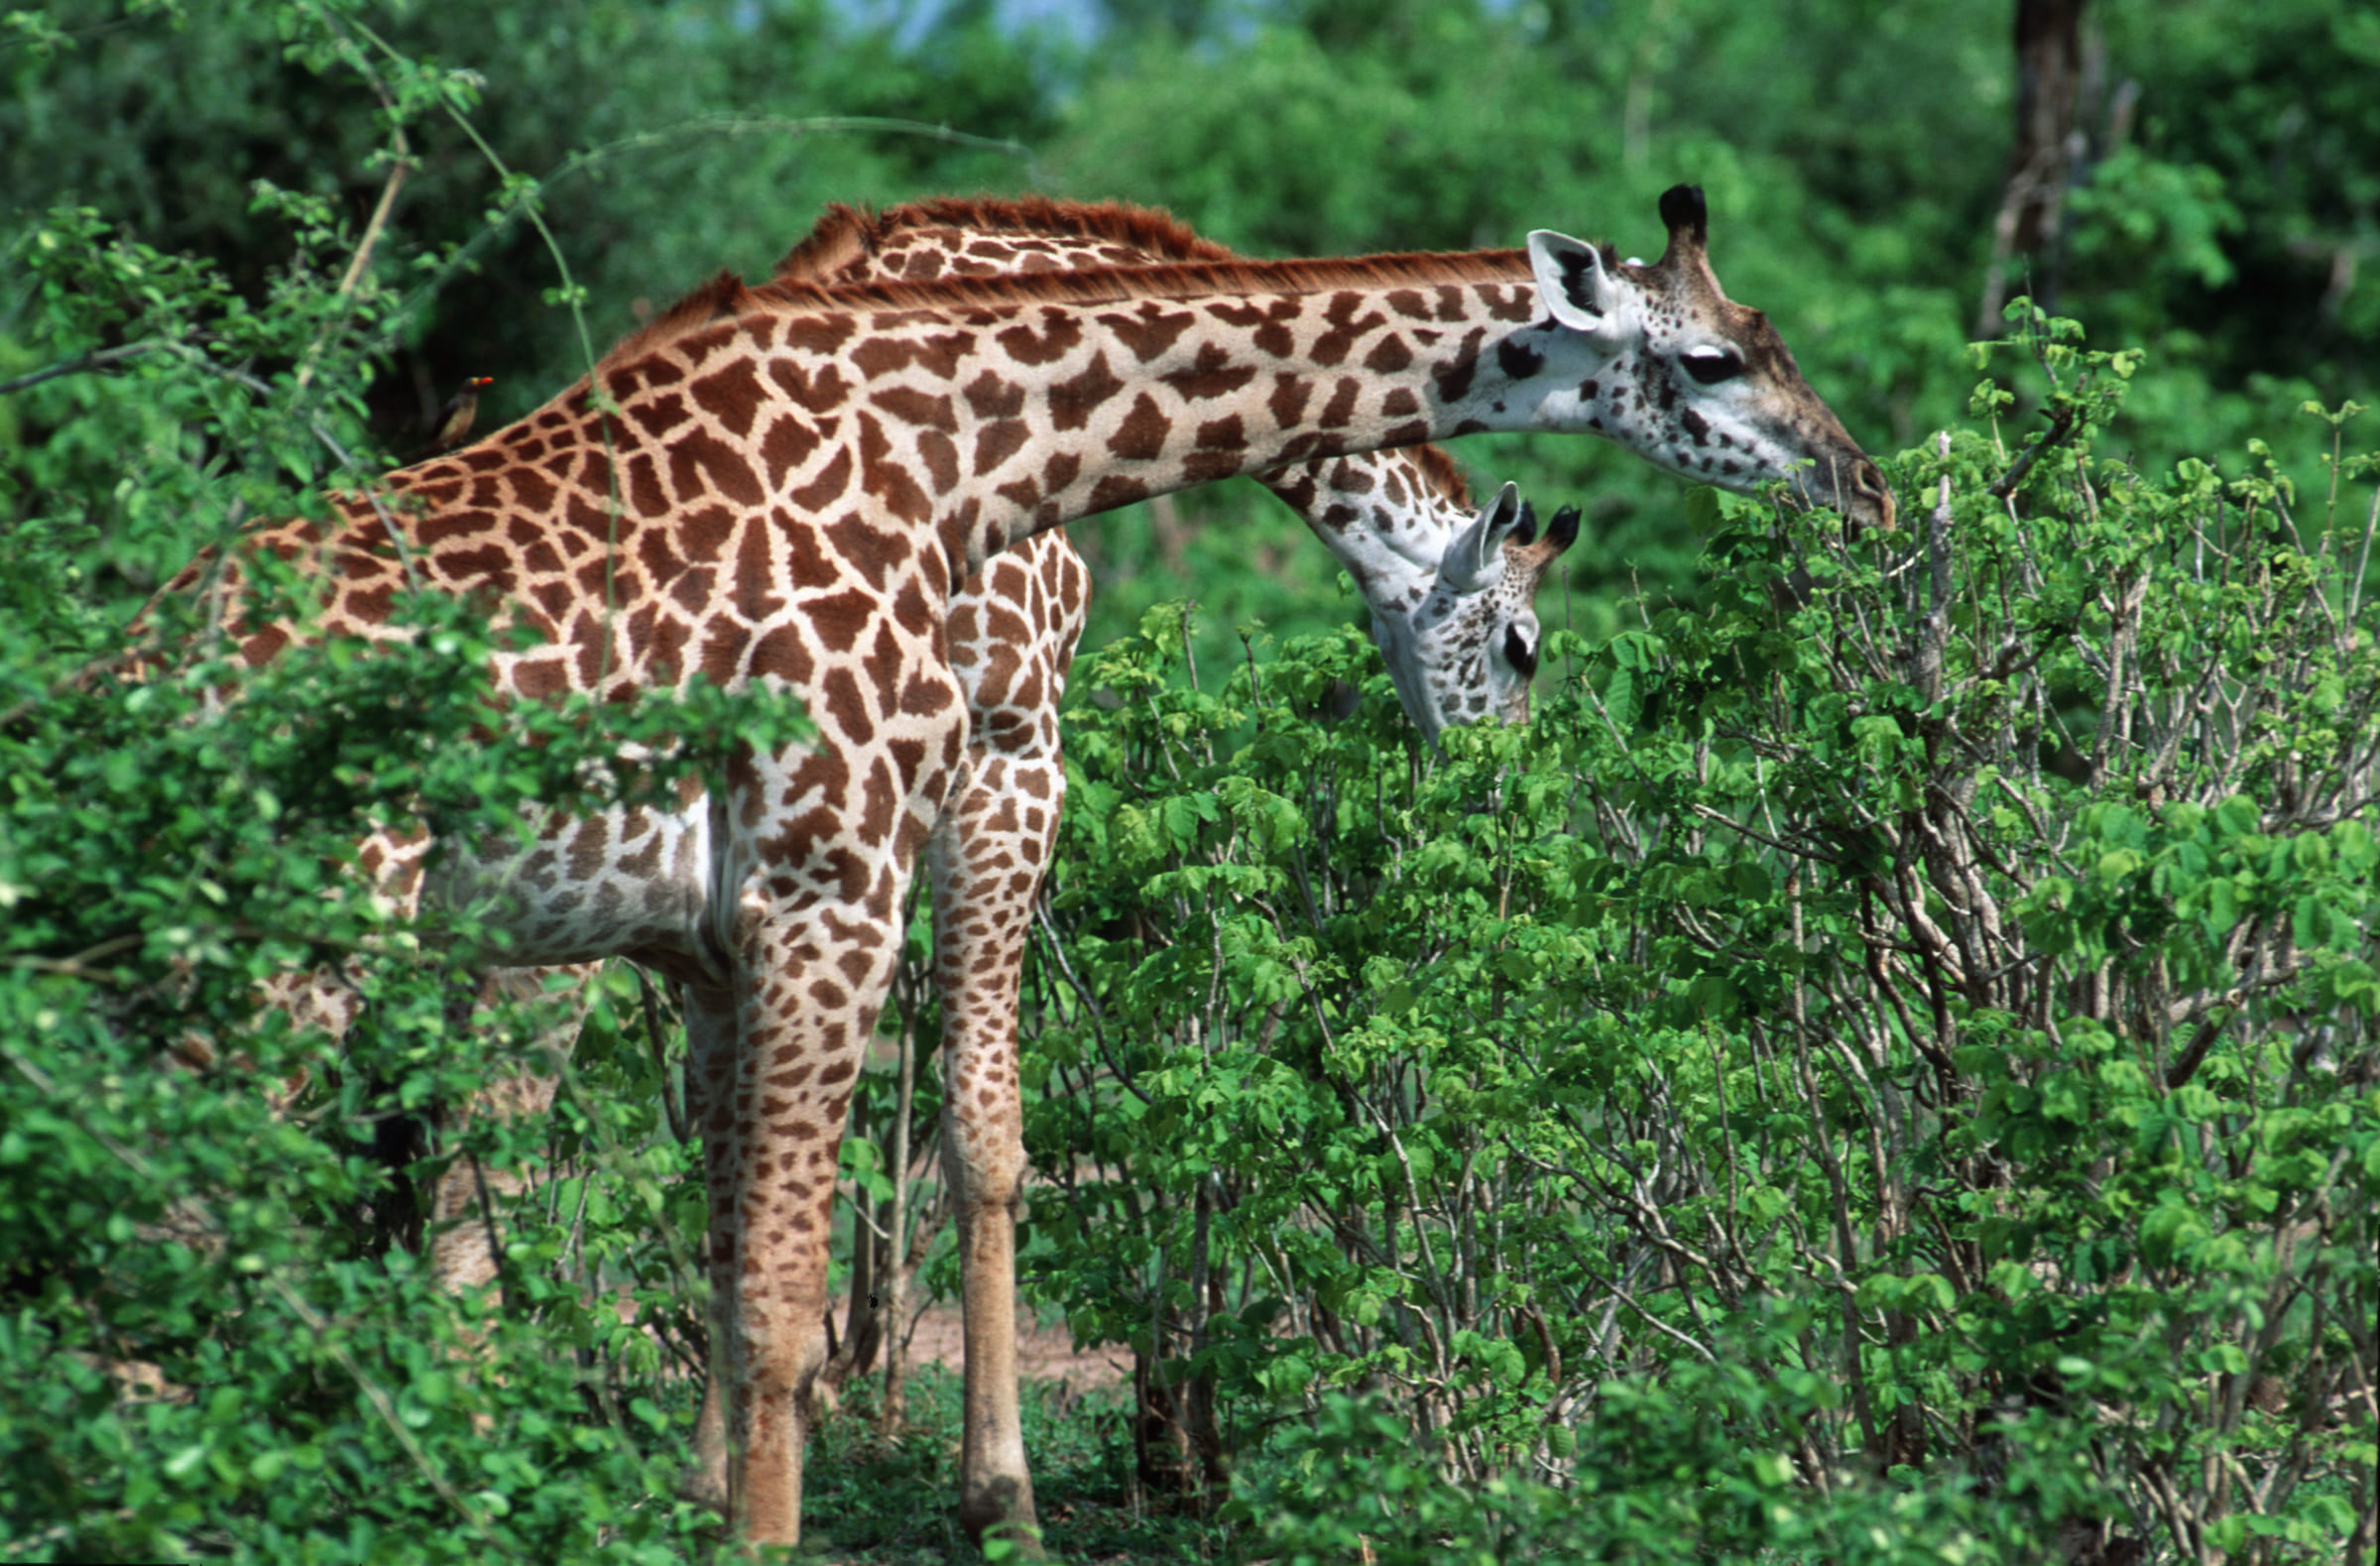 Girafe Masaï